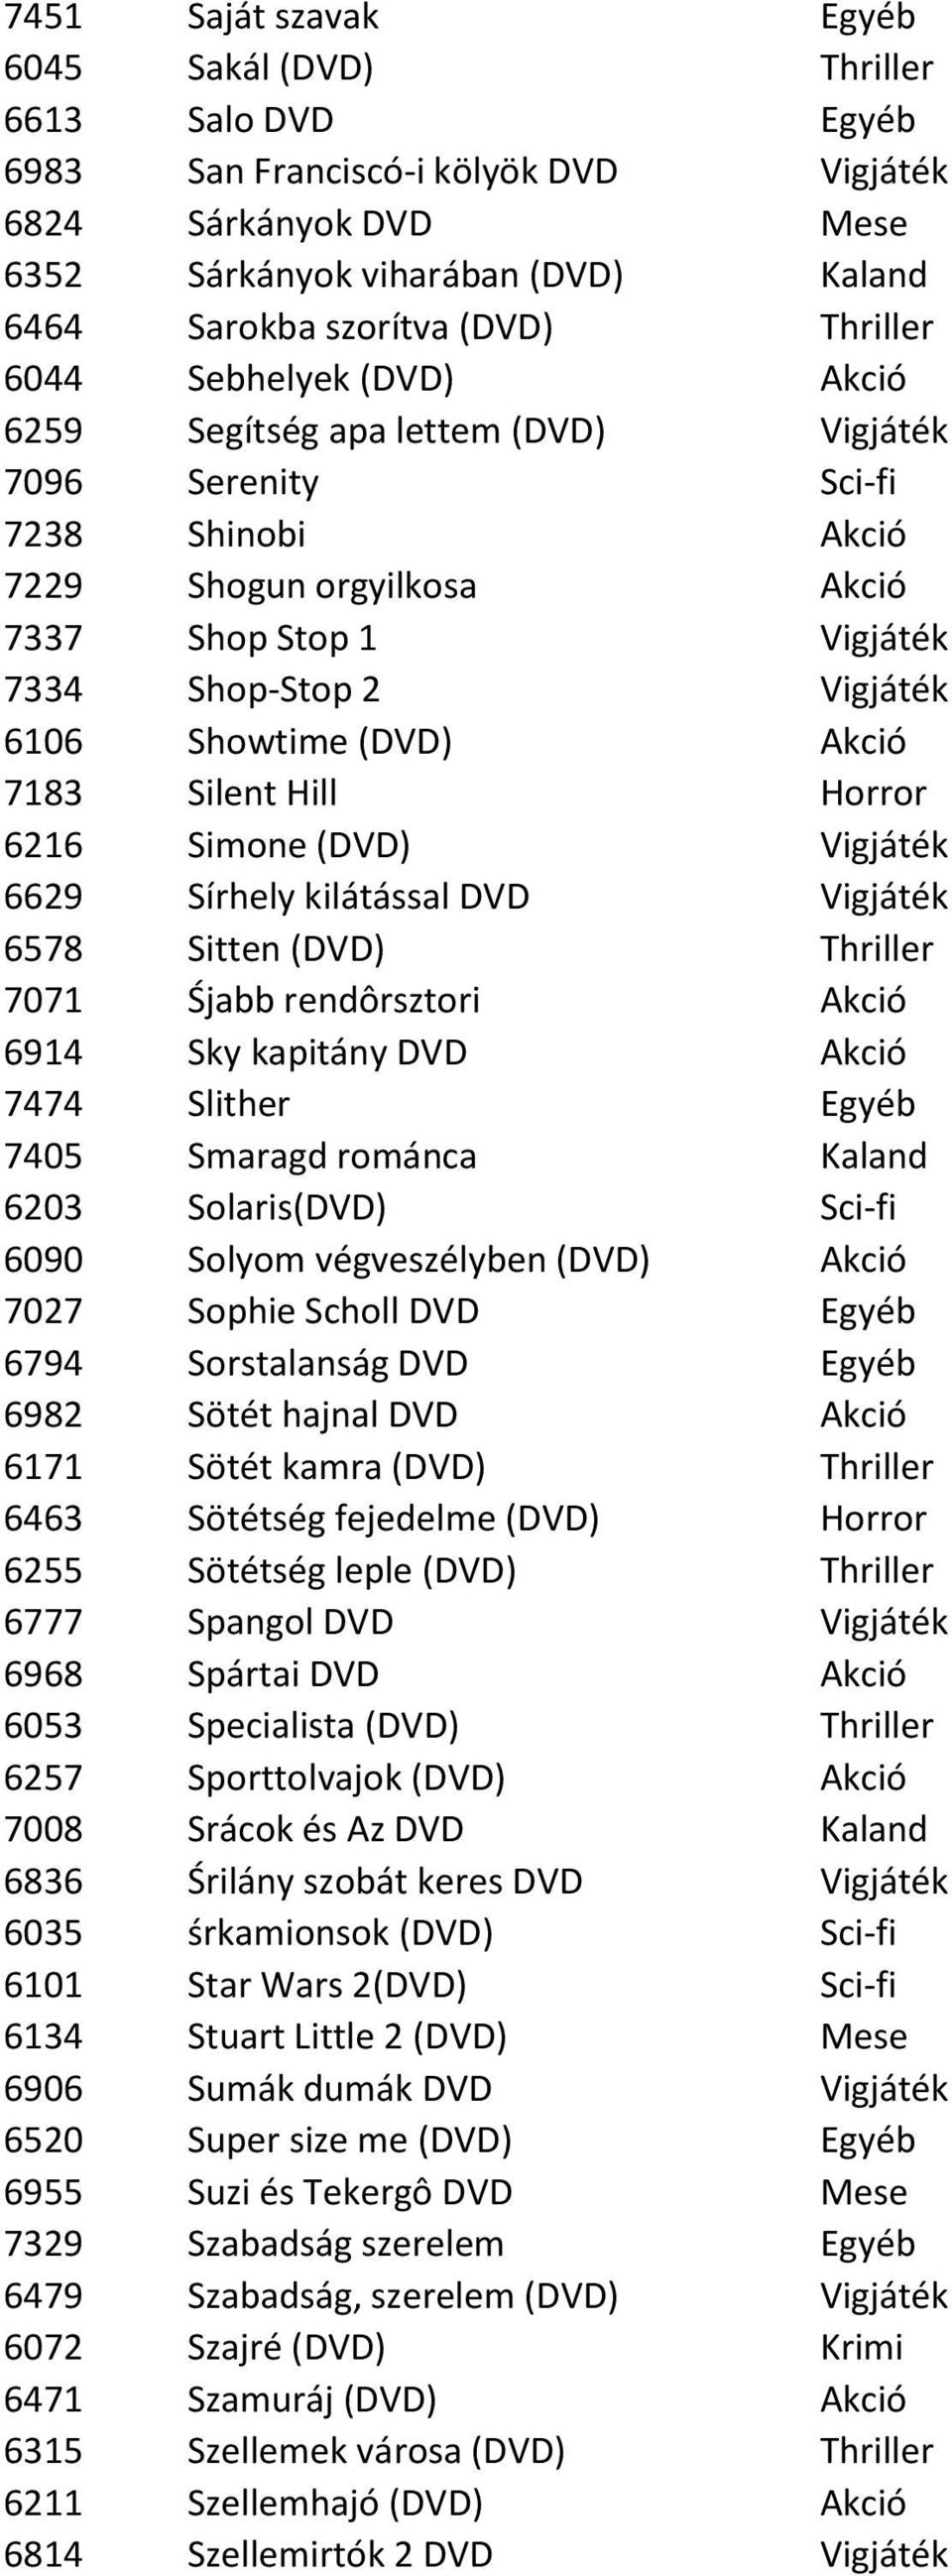 Vigjáték 6106 Showtime (DVD) Akció 7183 Silent Hill Horror 6216 Simone (DVD) Vigjáték 6629 Sírhely kilátással DVD Vigjáték 6578 Sitten (DVD) Thriller 7071 Śjabb rendôrsztori Akció 6914 Sky kapitány